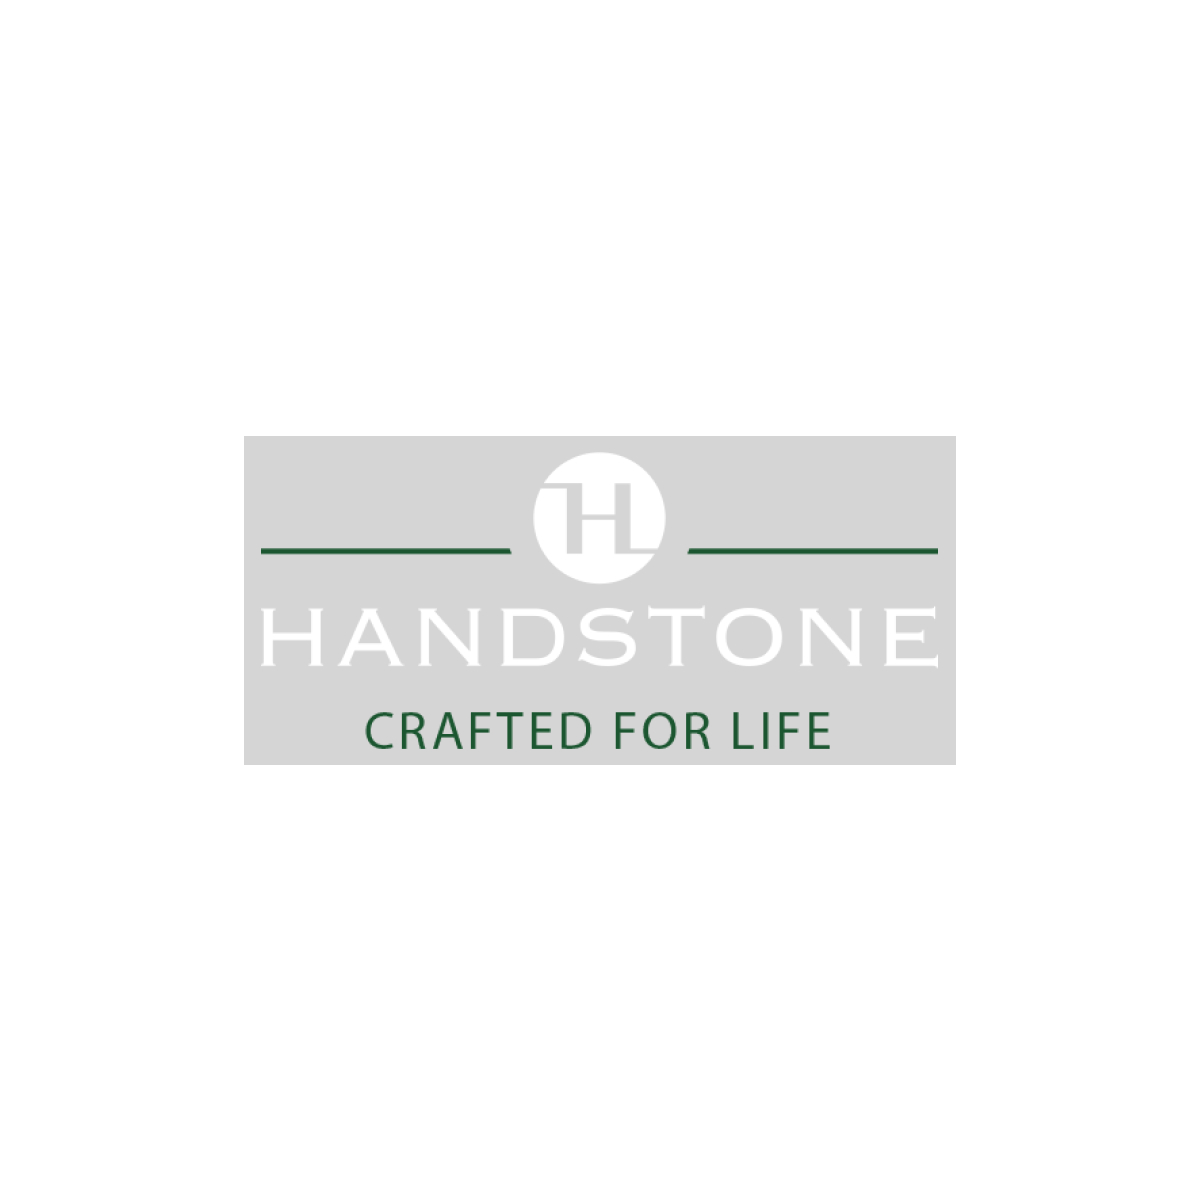 handstone